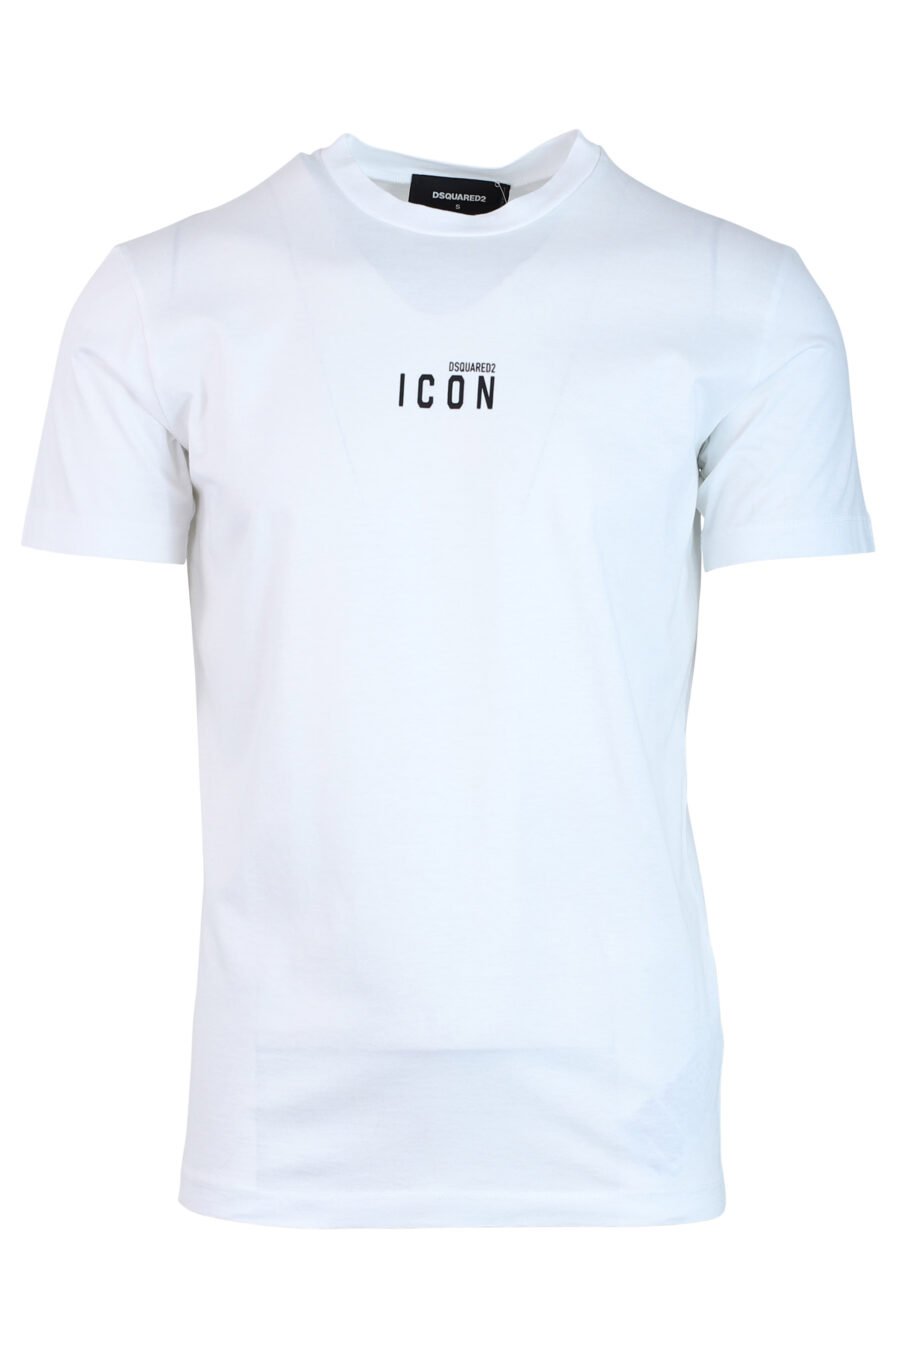 Camiseta blanca con minilogo "icon" - IMG 0719